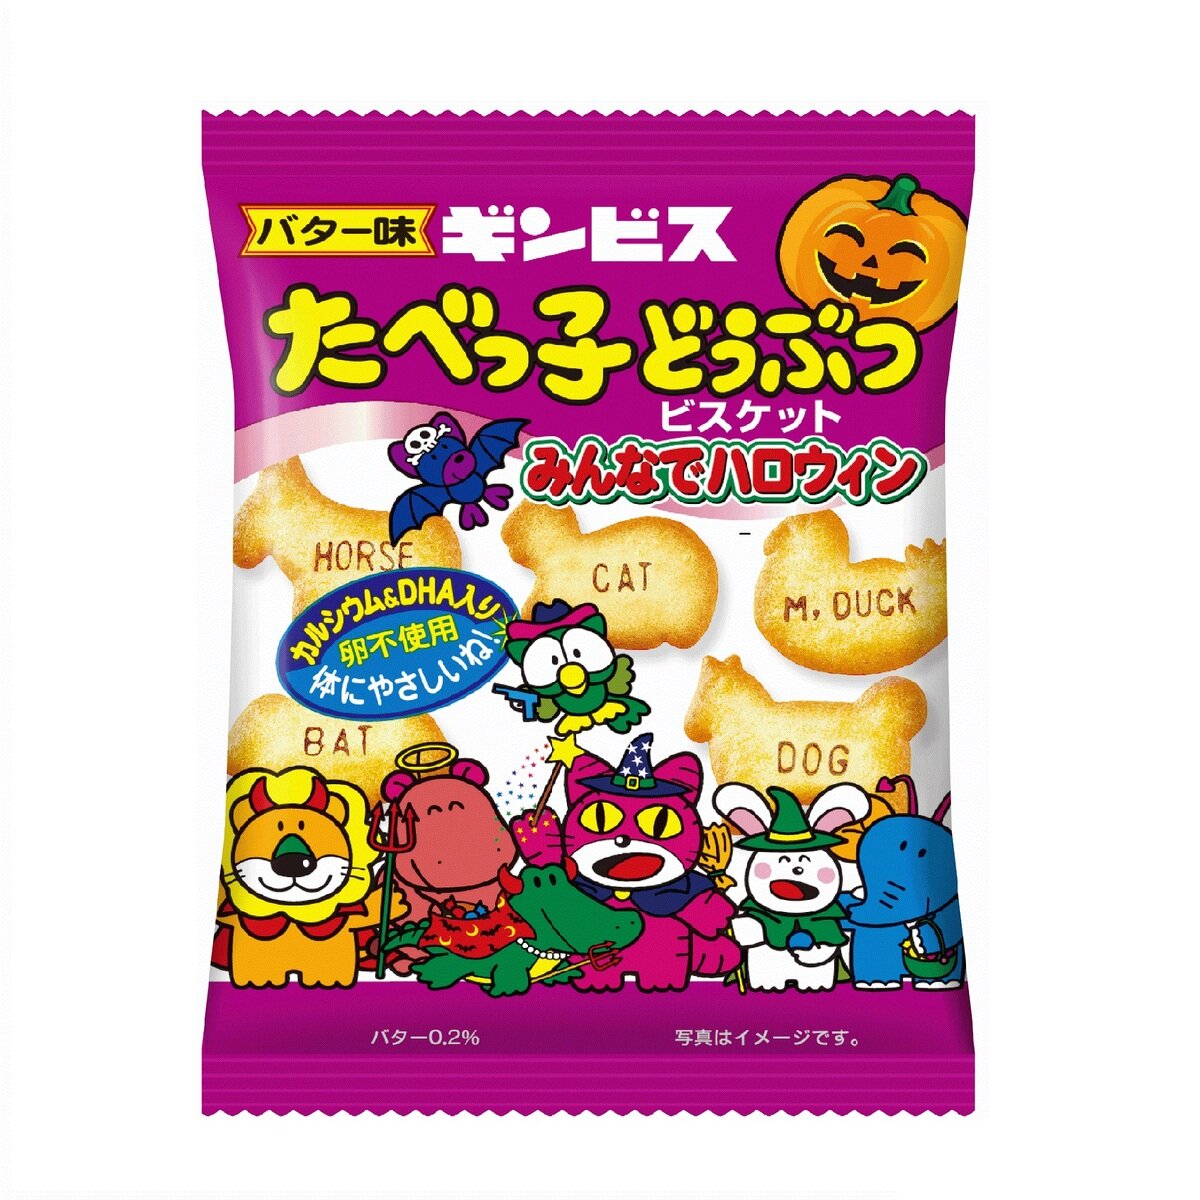 たべっ子どうぶつ 24gX50袋 ハロウィンパッケージ | Costco Japan